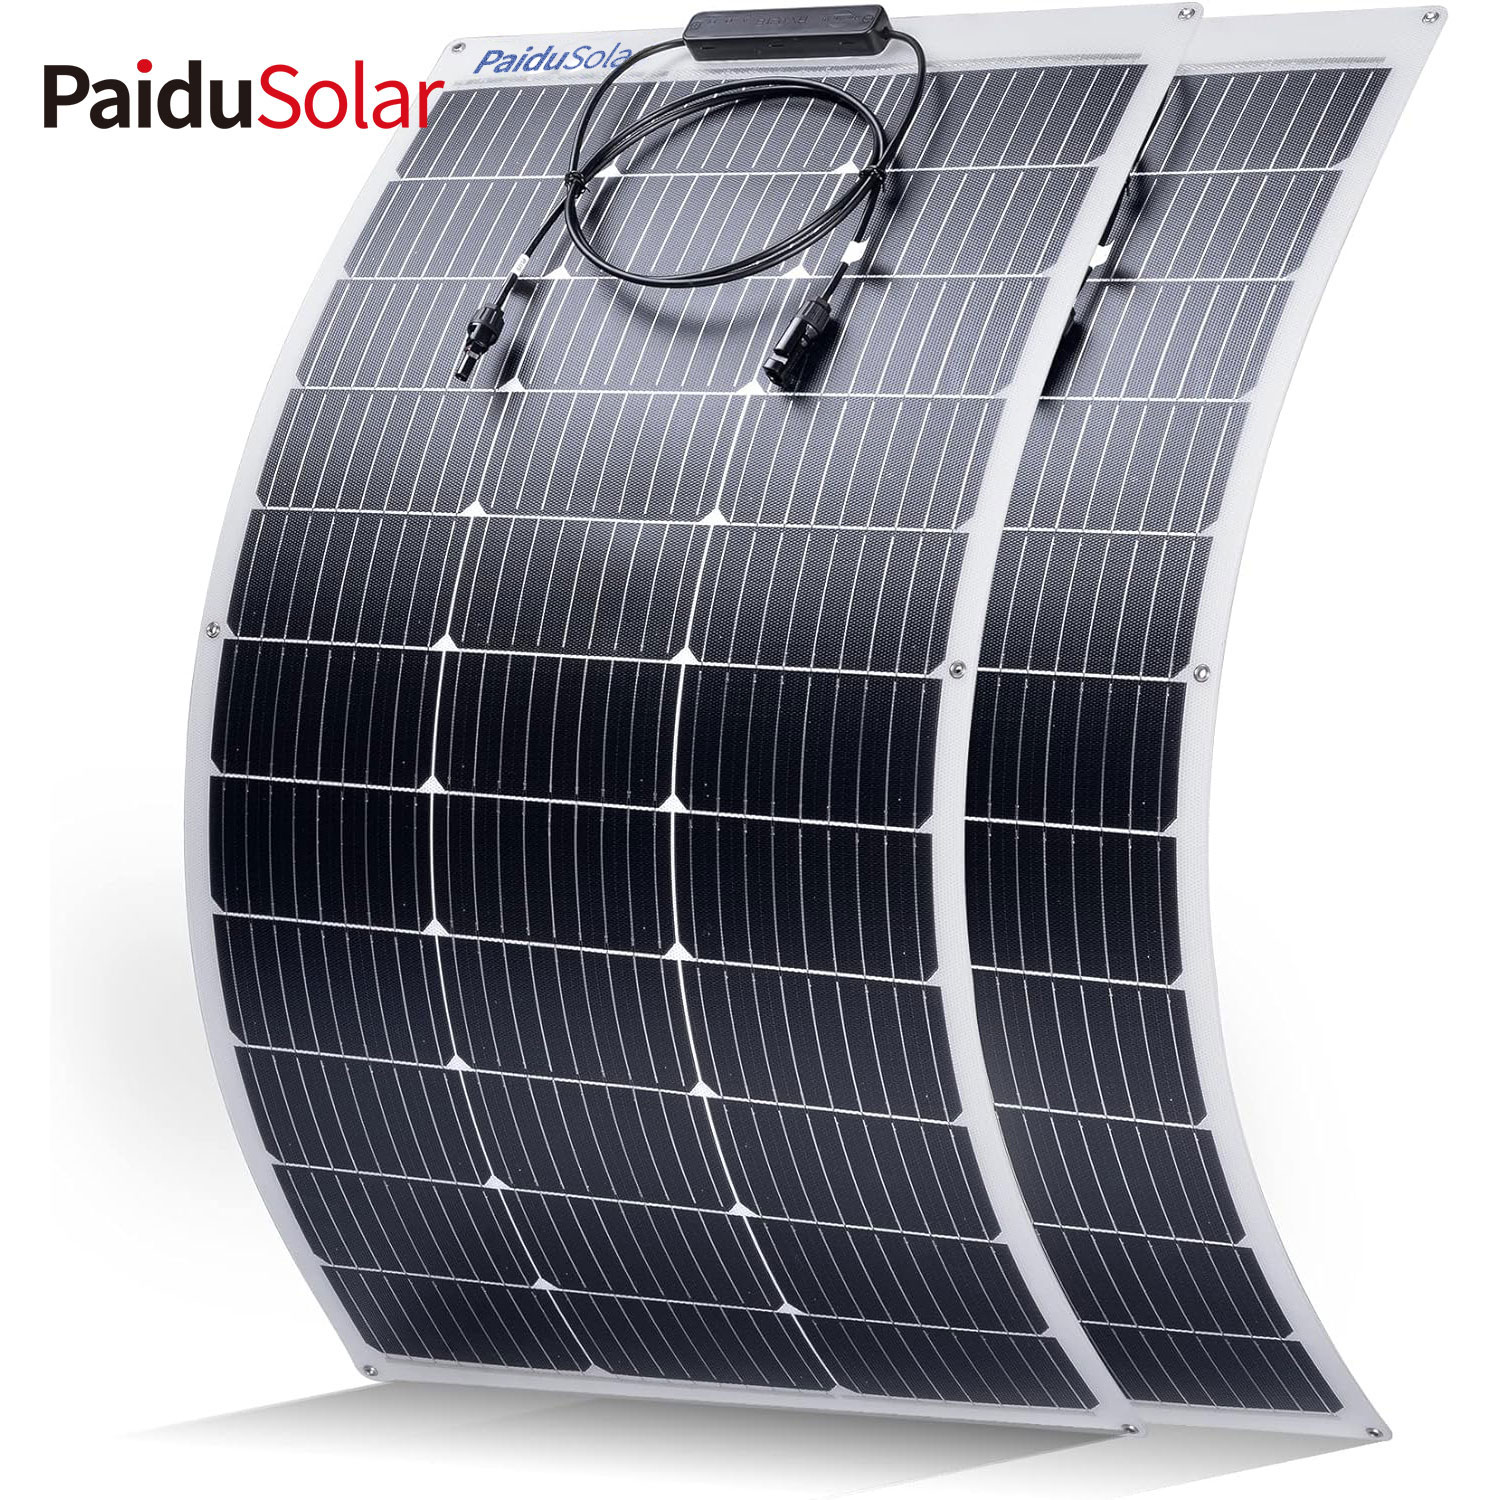 PaiduSolar 100 Вт 12 В полугибкая солнечная панель для морского автофургона с прицепом, лодки, кабины, фургона, автомобиля